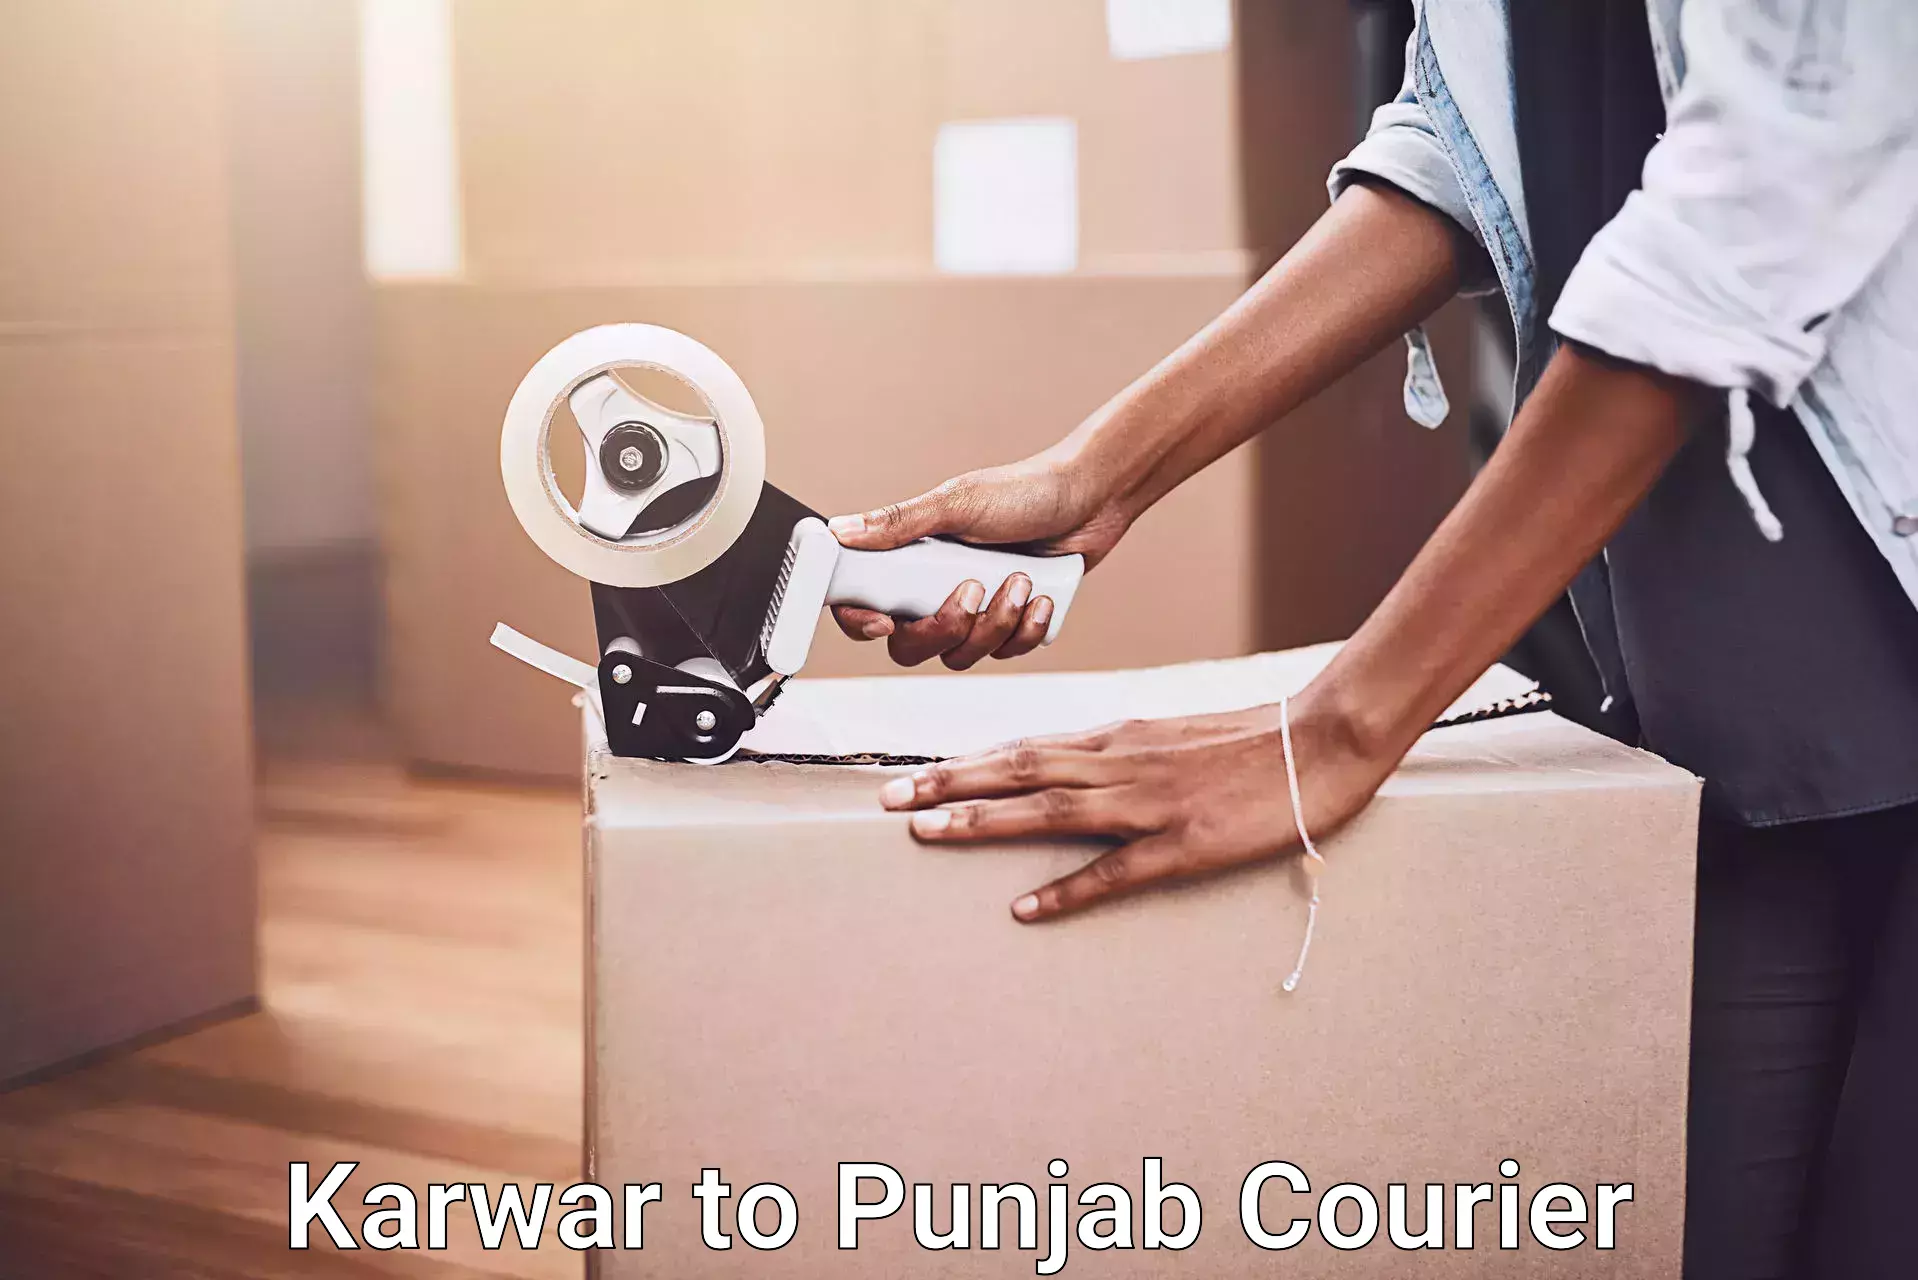 Furniture moving specialists Karwar to Punjab